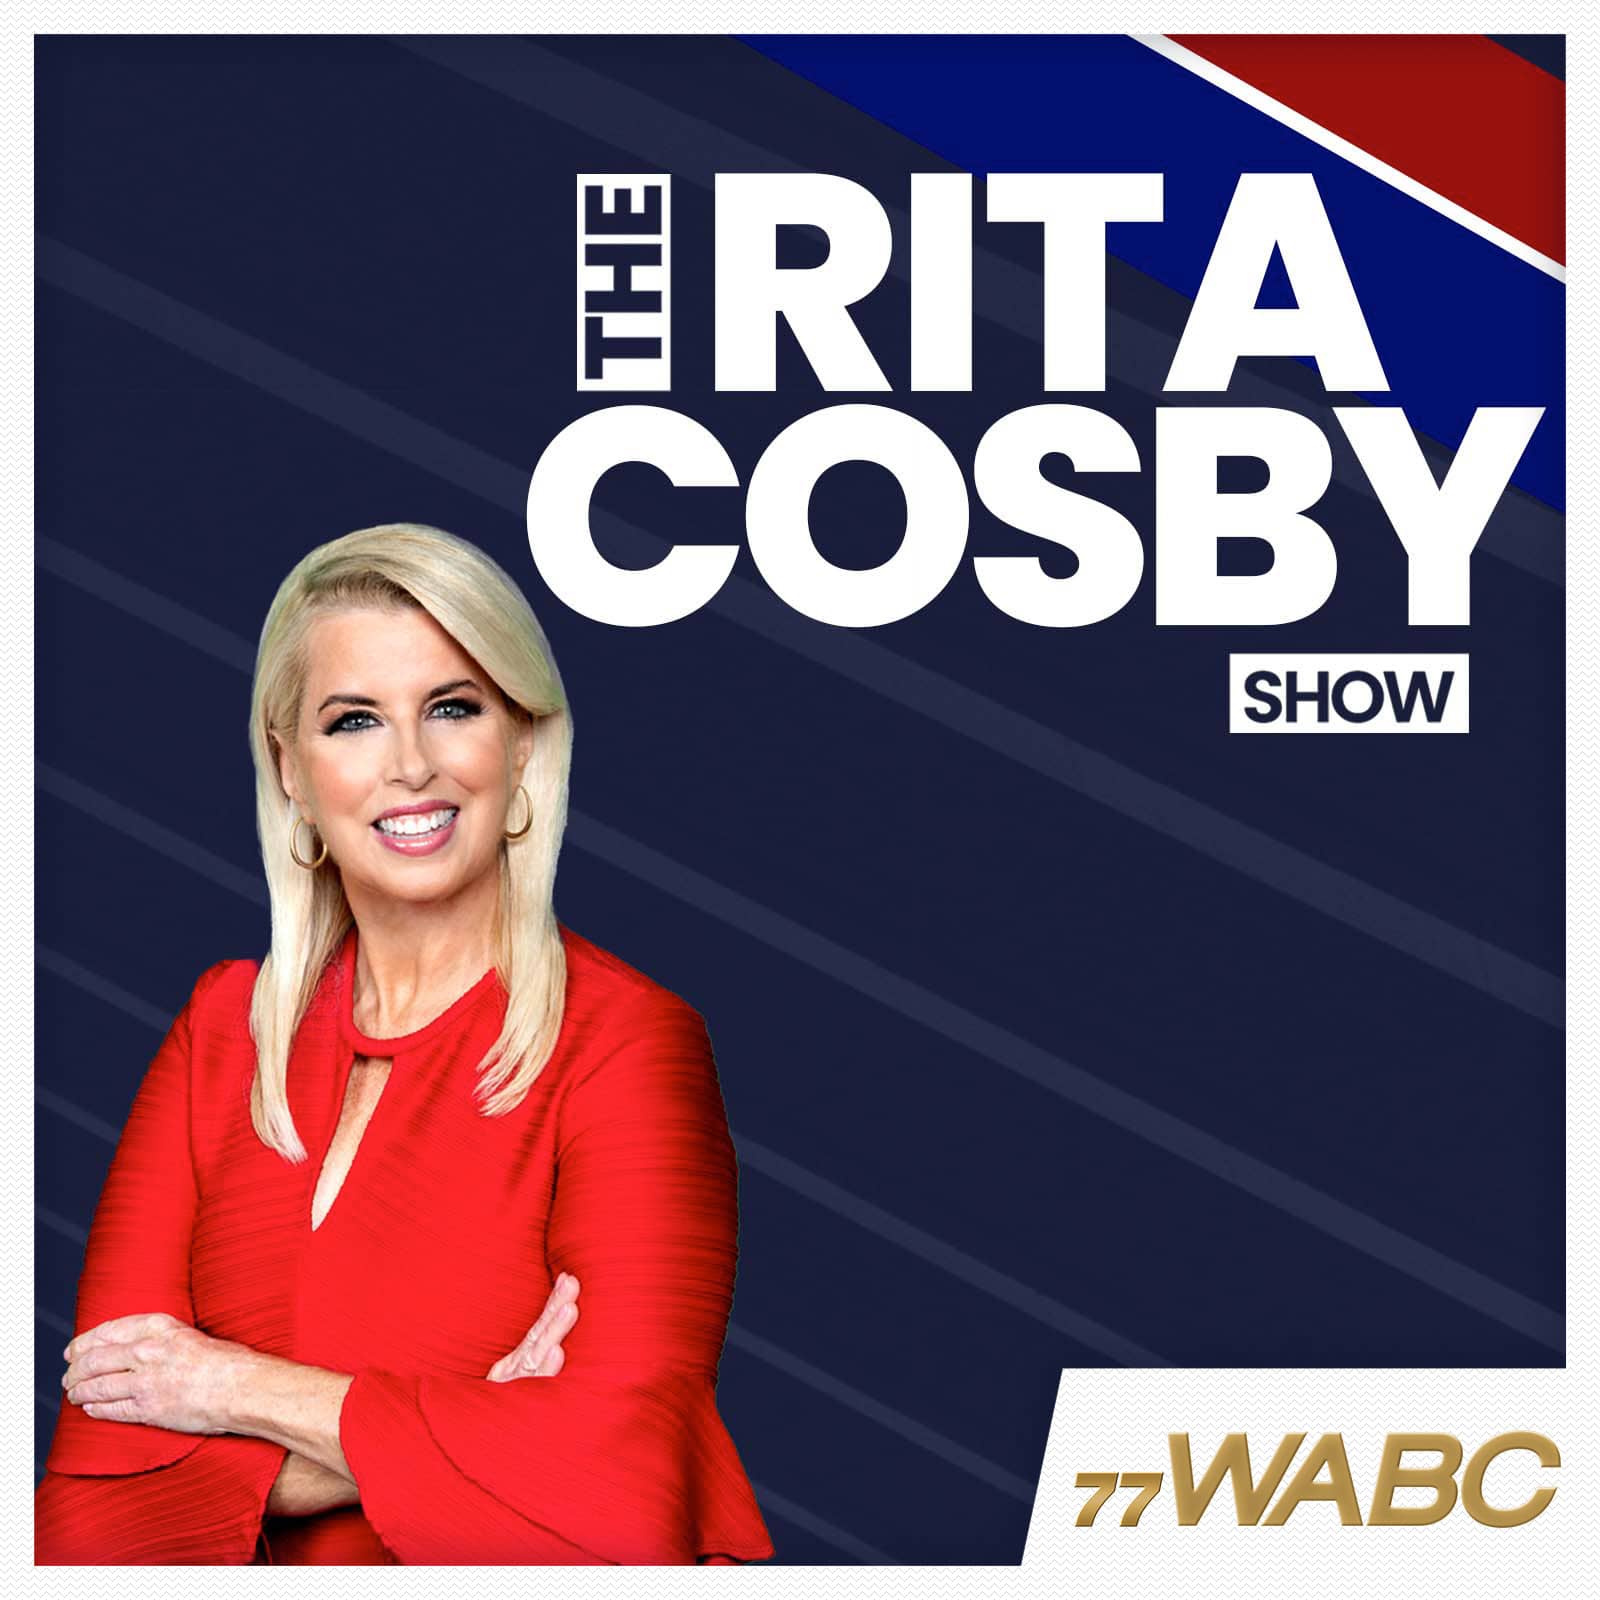 rita-cosby-podcast-new-logo-256